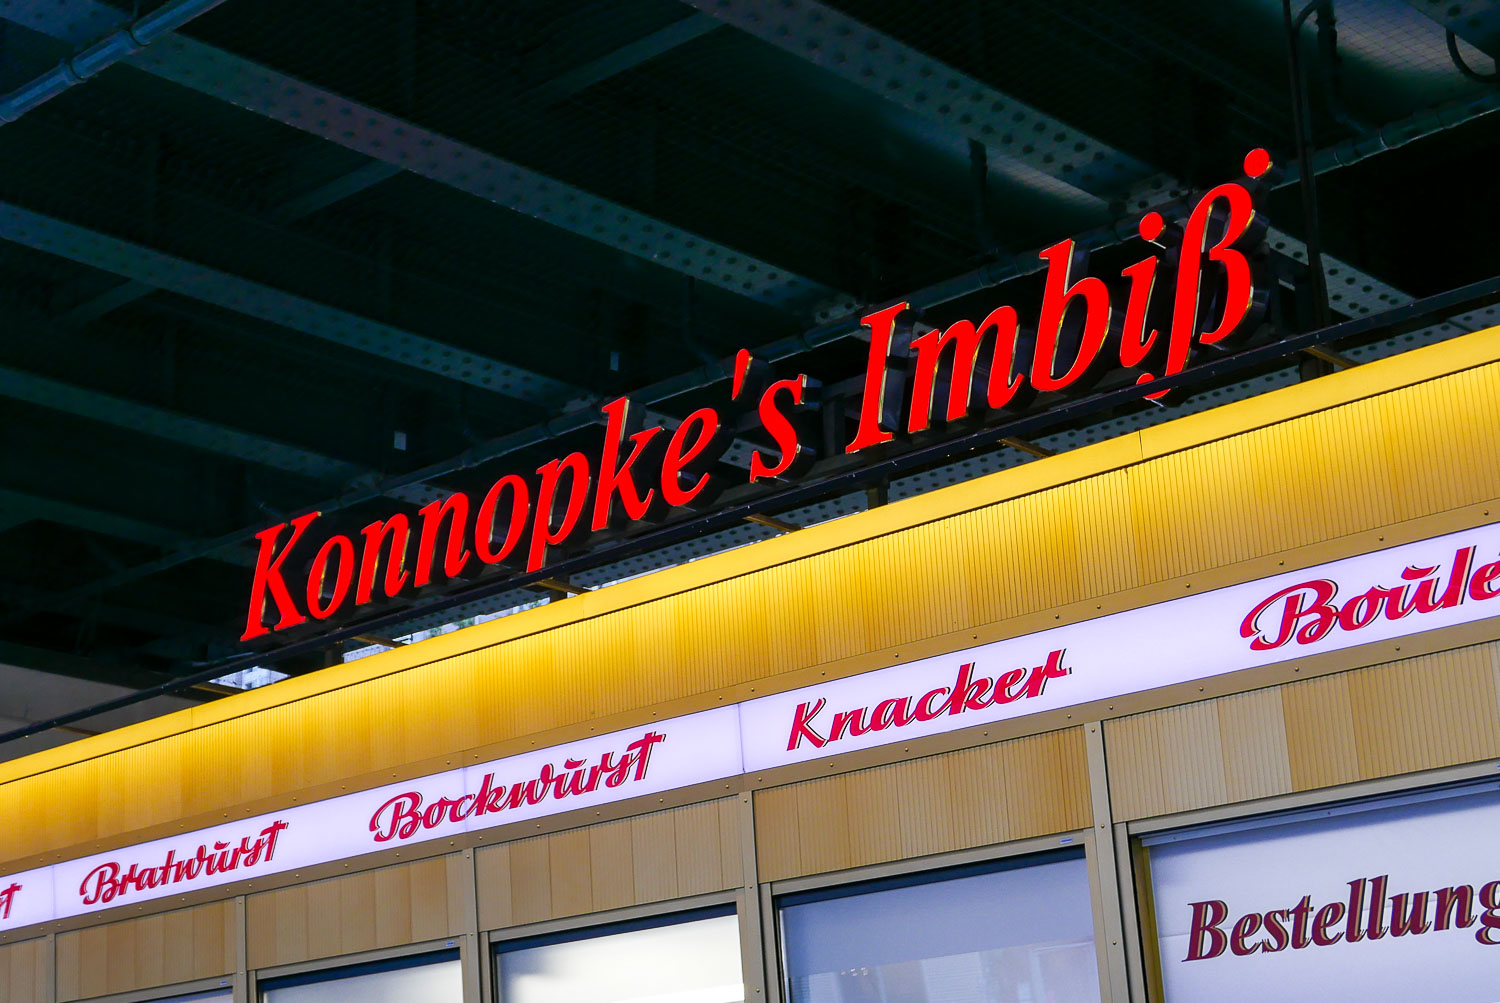 Konnopke's Imbiss